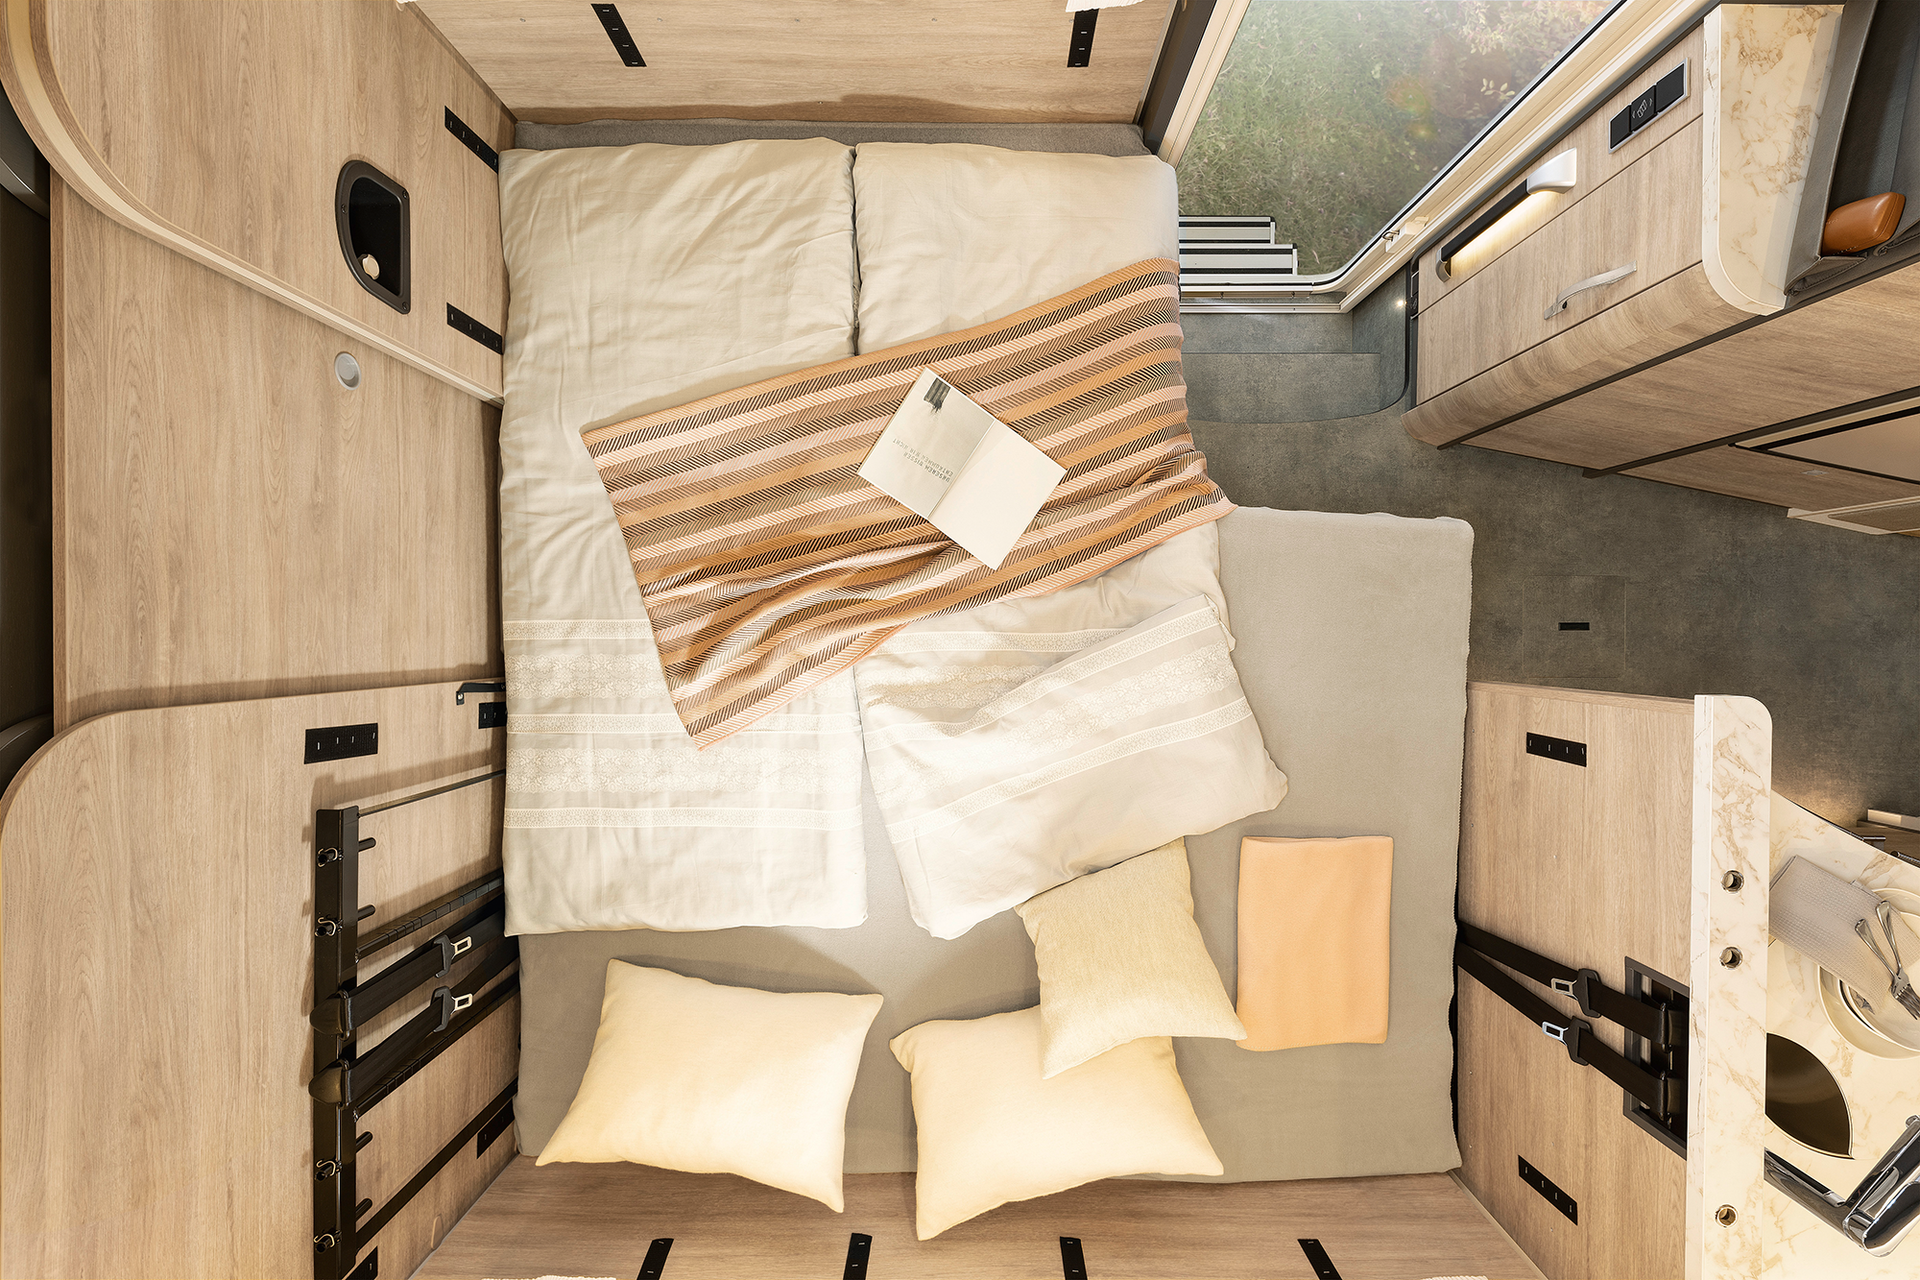 Gdy potrzebne jest dodatkowe miejsce do spania, można szybko przebudować kanapę do łóżka dla dwóch osób